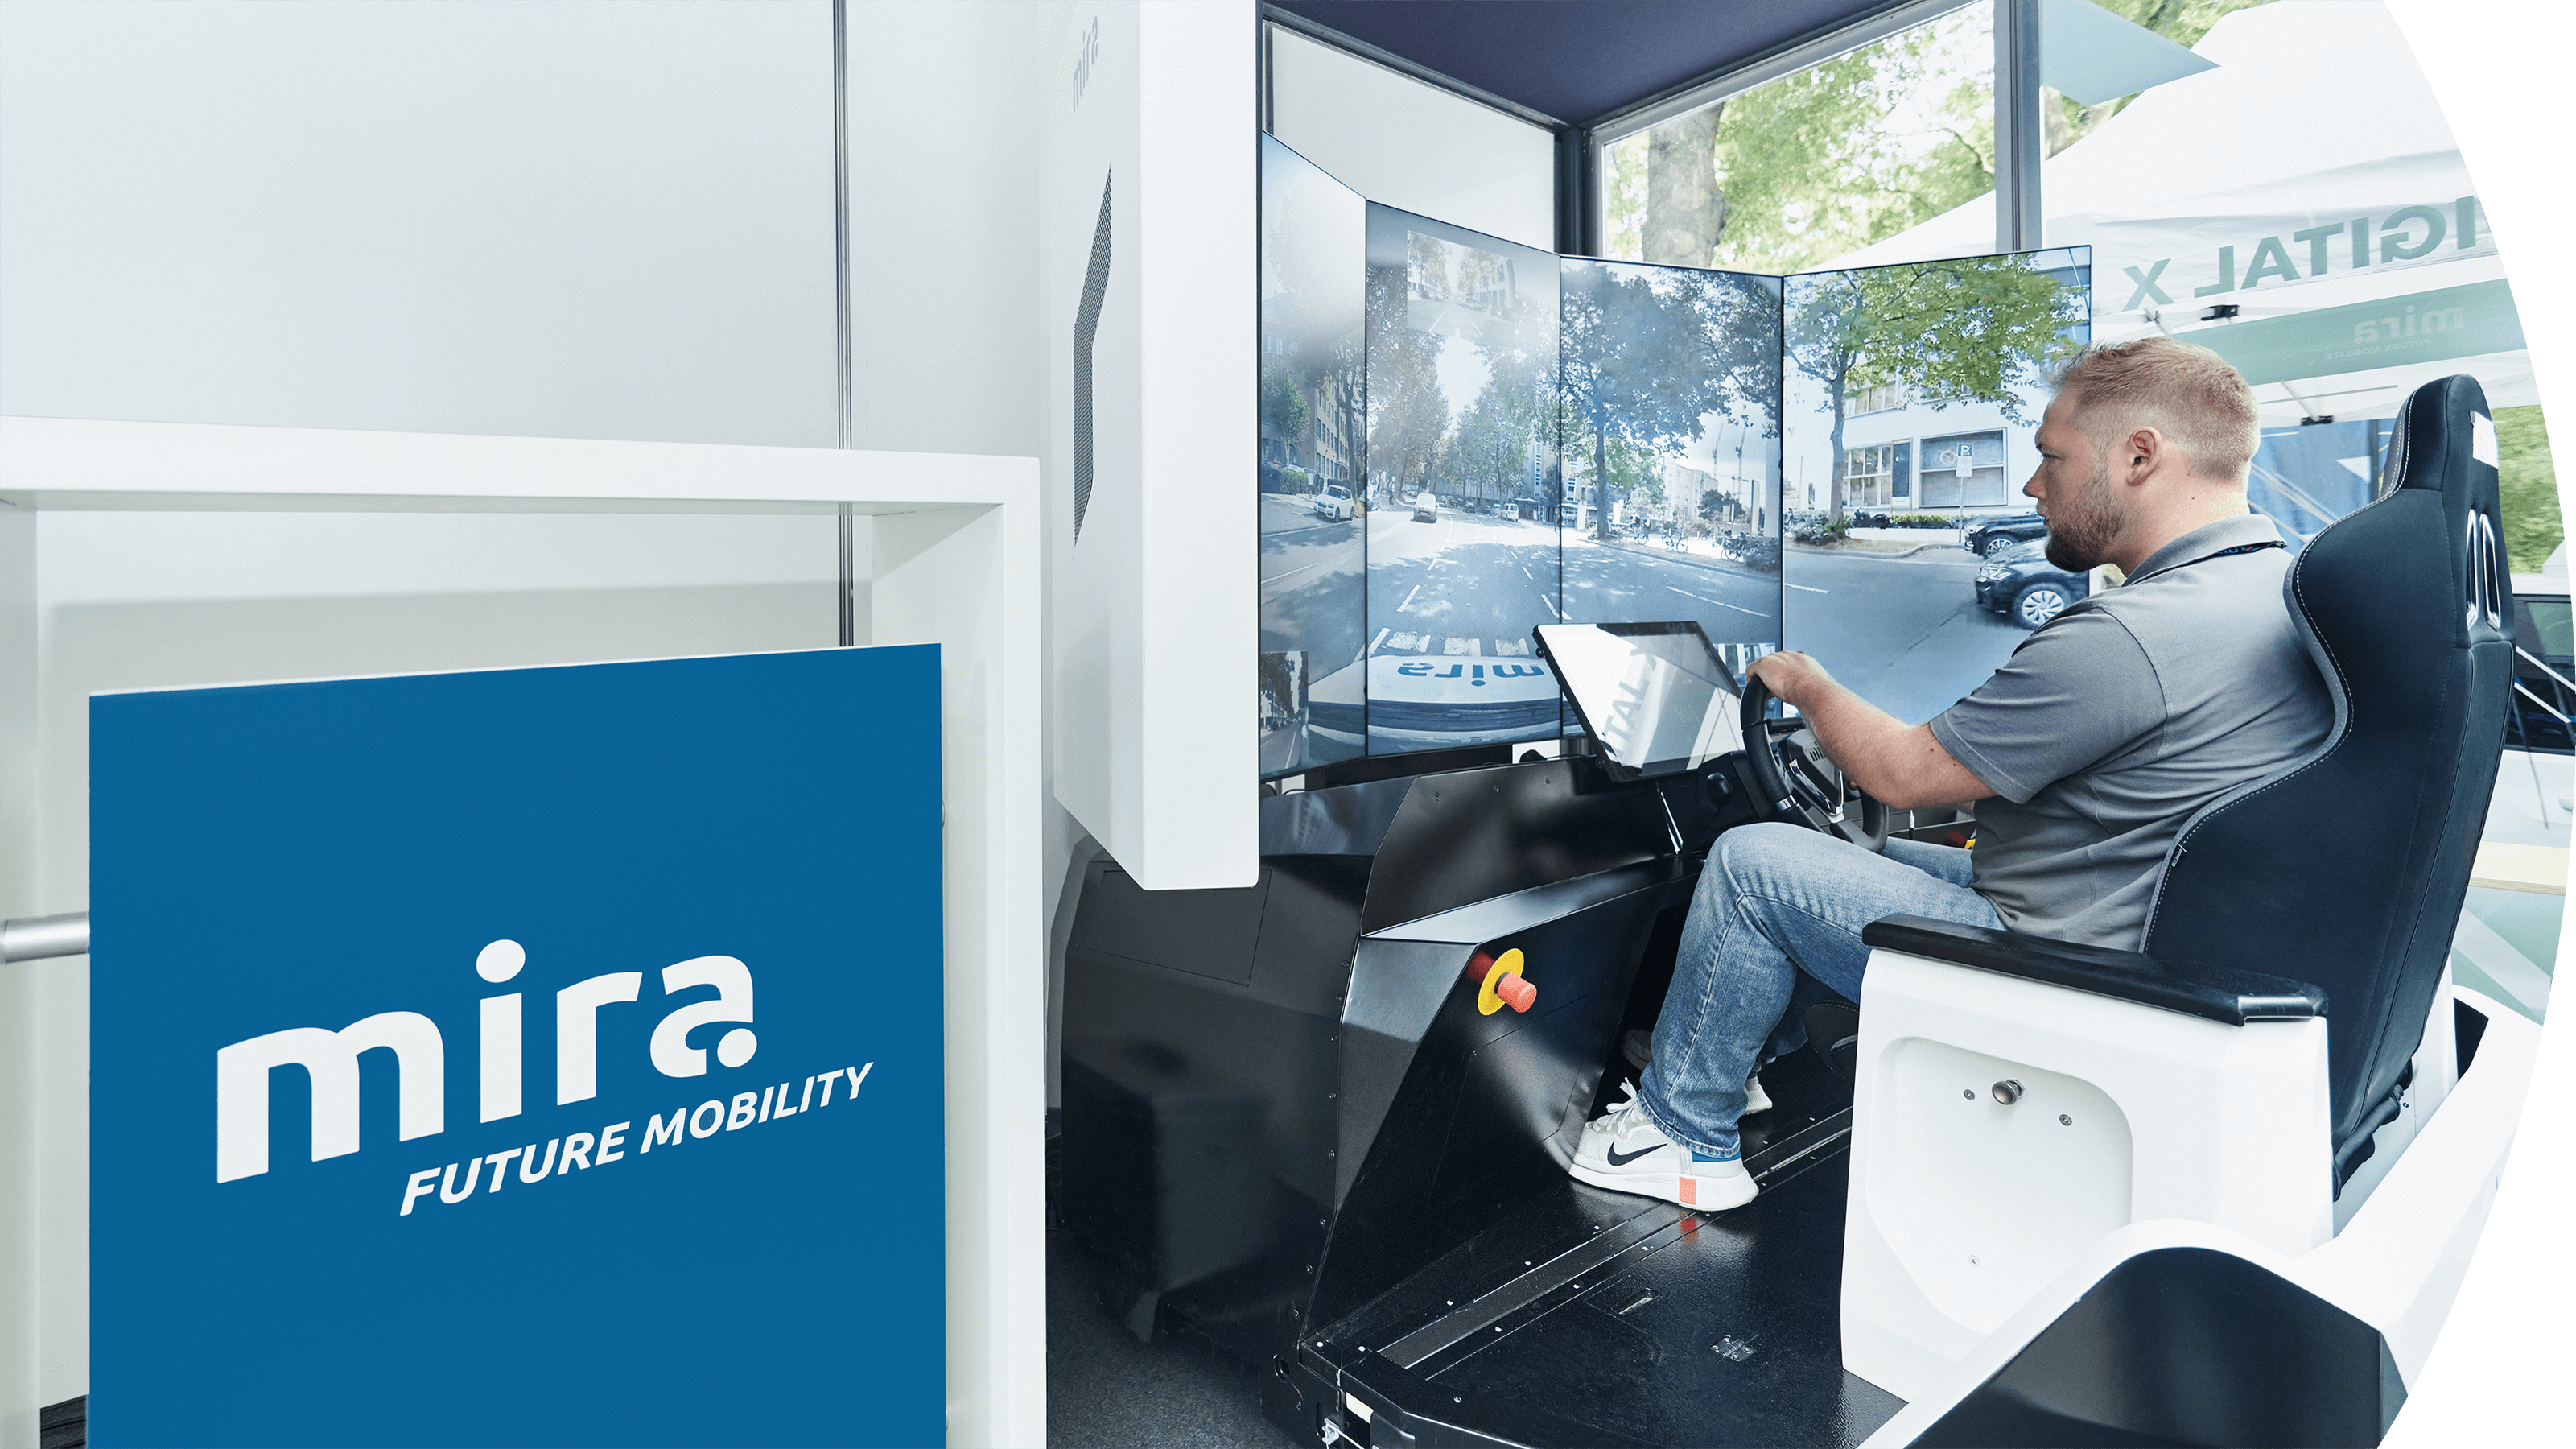 MIRA realisiert die räumliche Entkoppelung von Fahrer und Fahrzeug mittels Teleoperation. Der Teleoperator fährt das Fahrzeug direkt aus einem Fahrstand heraus.